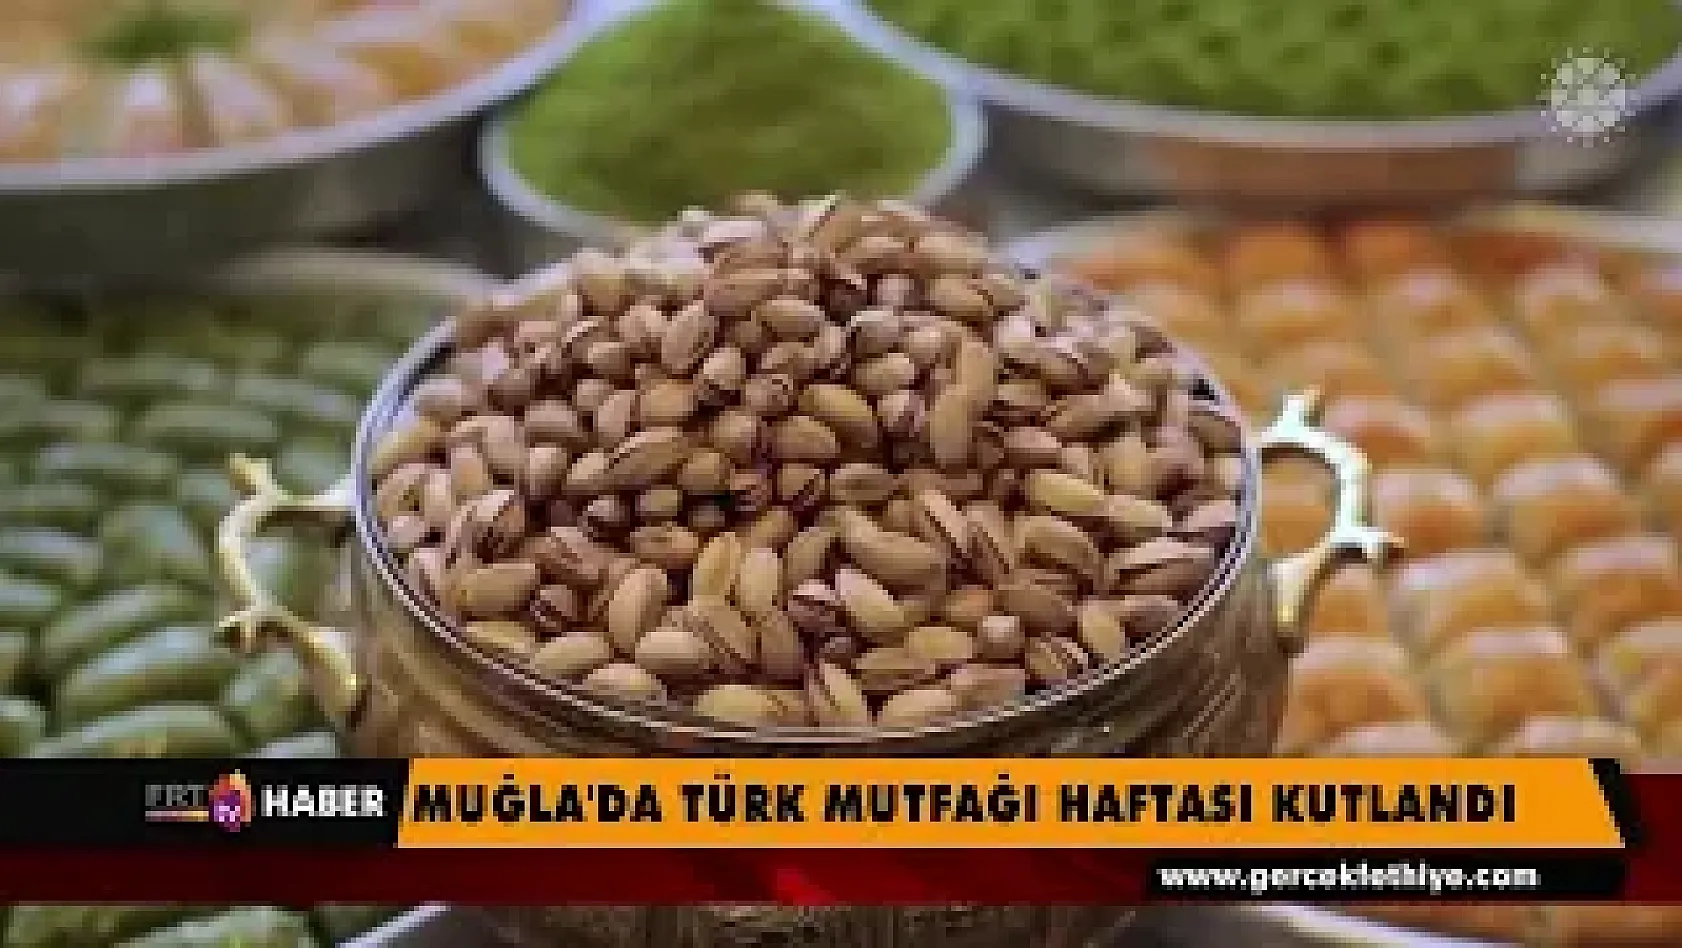 Muğla'da Türk mutfağı haftası kutlandı